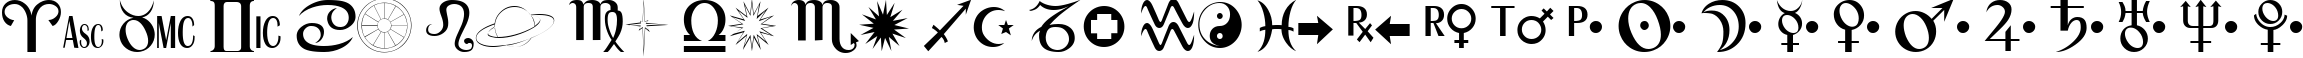 Пример написания английского алфавита шрифтом Astro